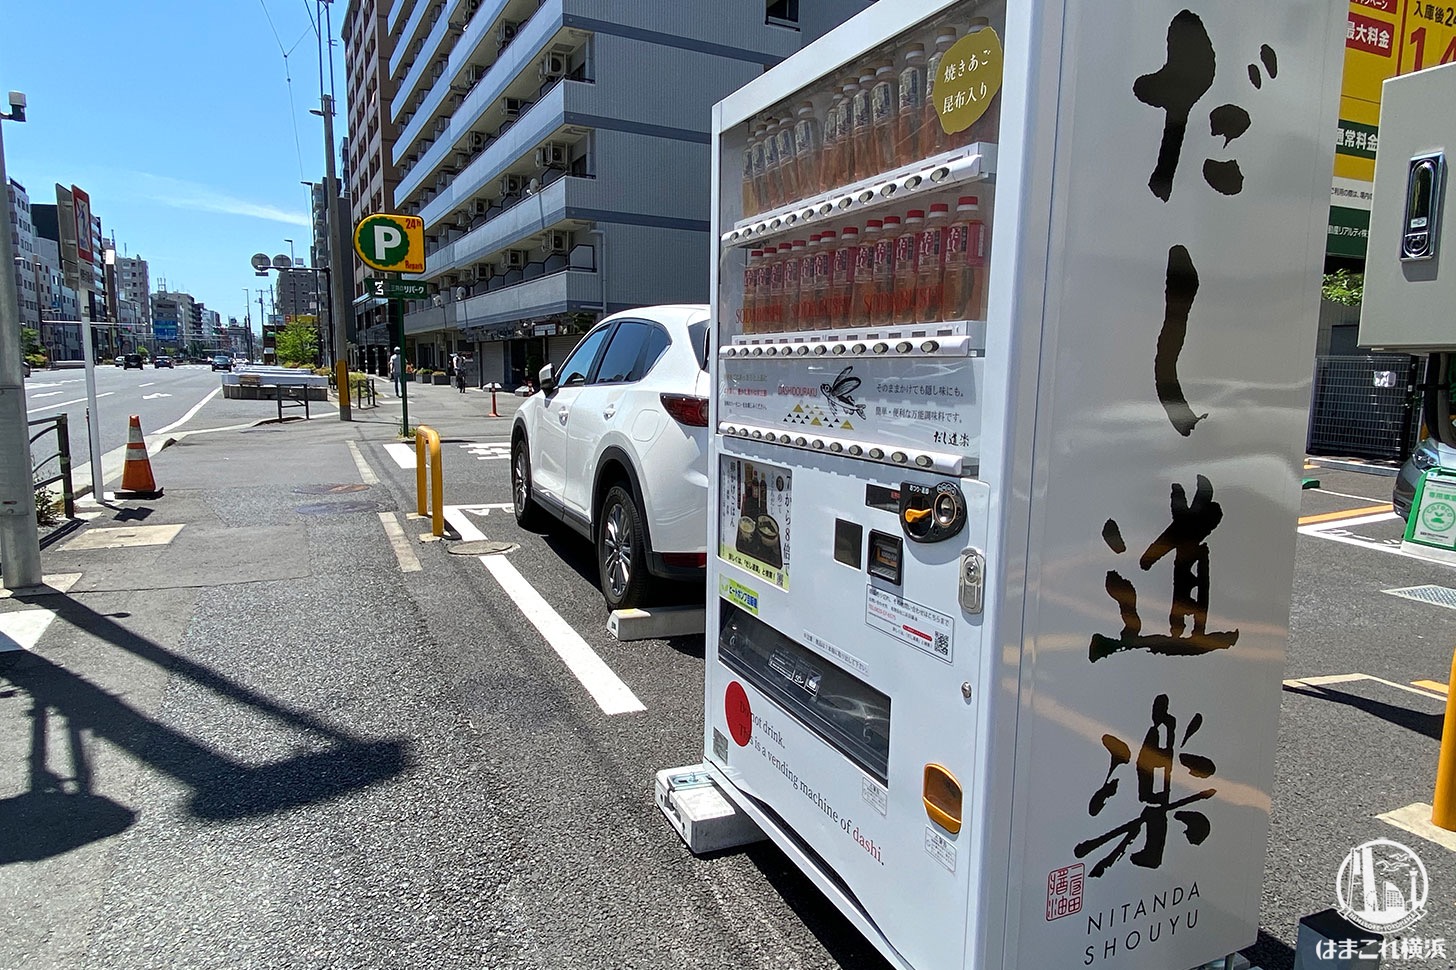 三井のリパーク「横浜中央1丁目第2」だし道楽 自販機